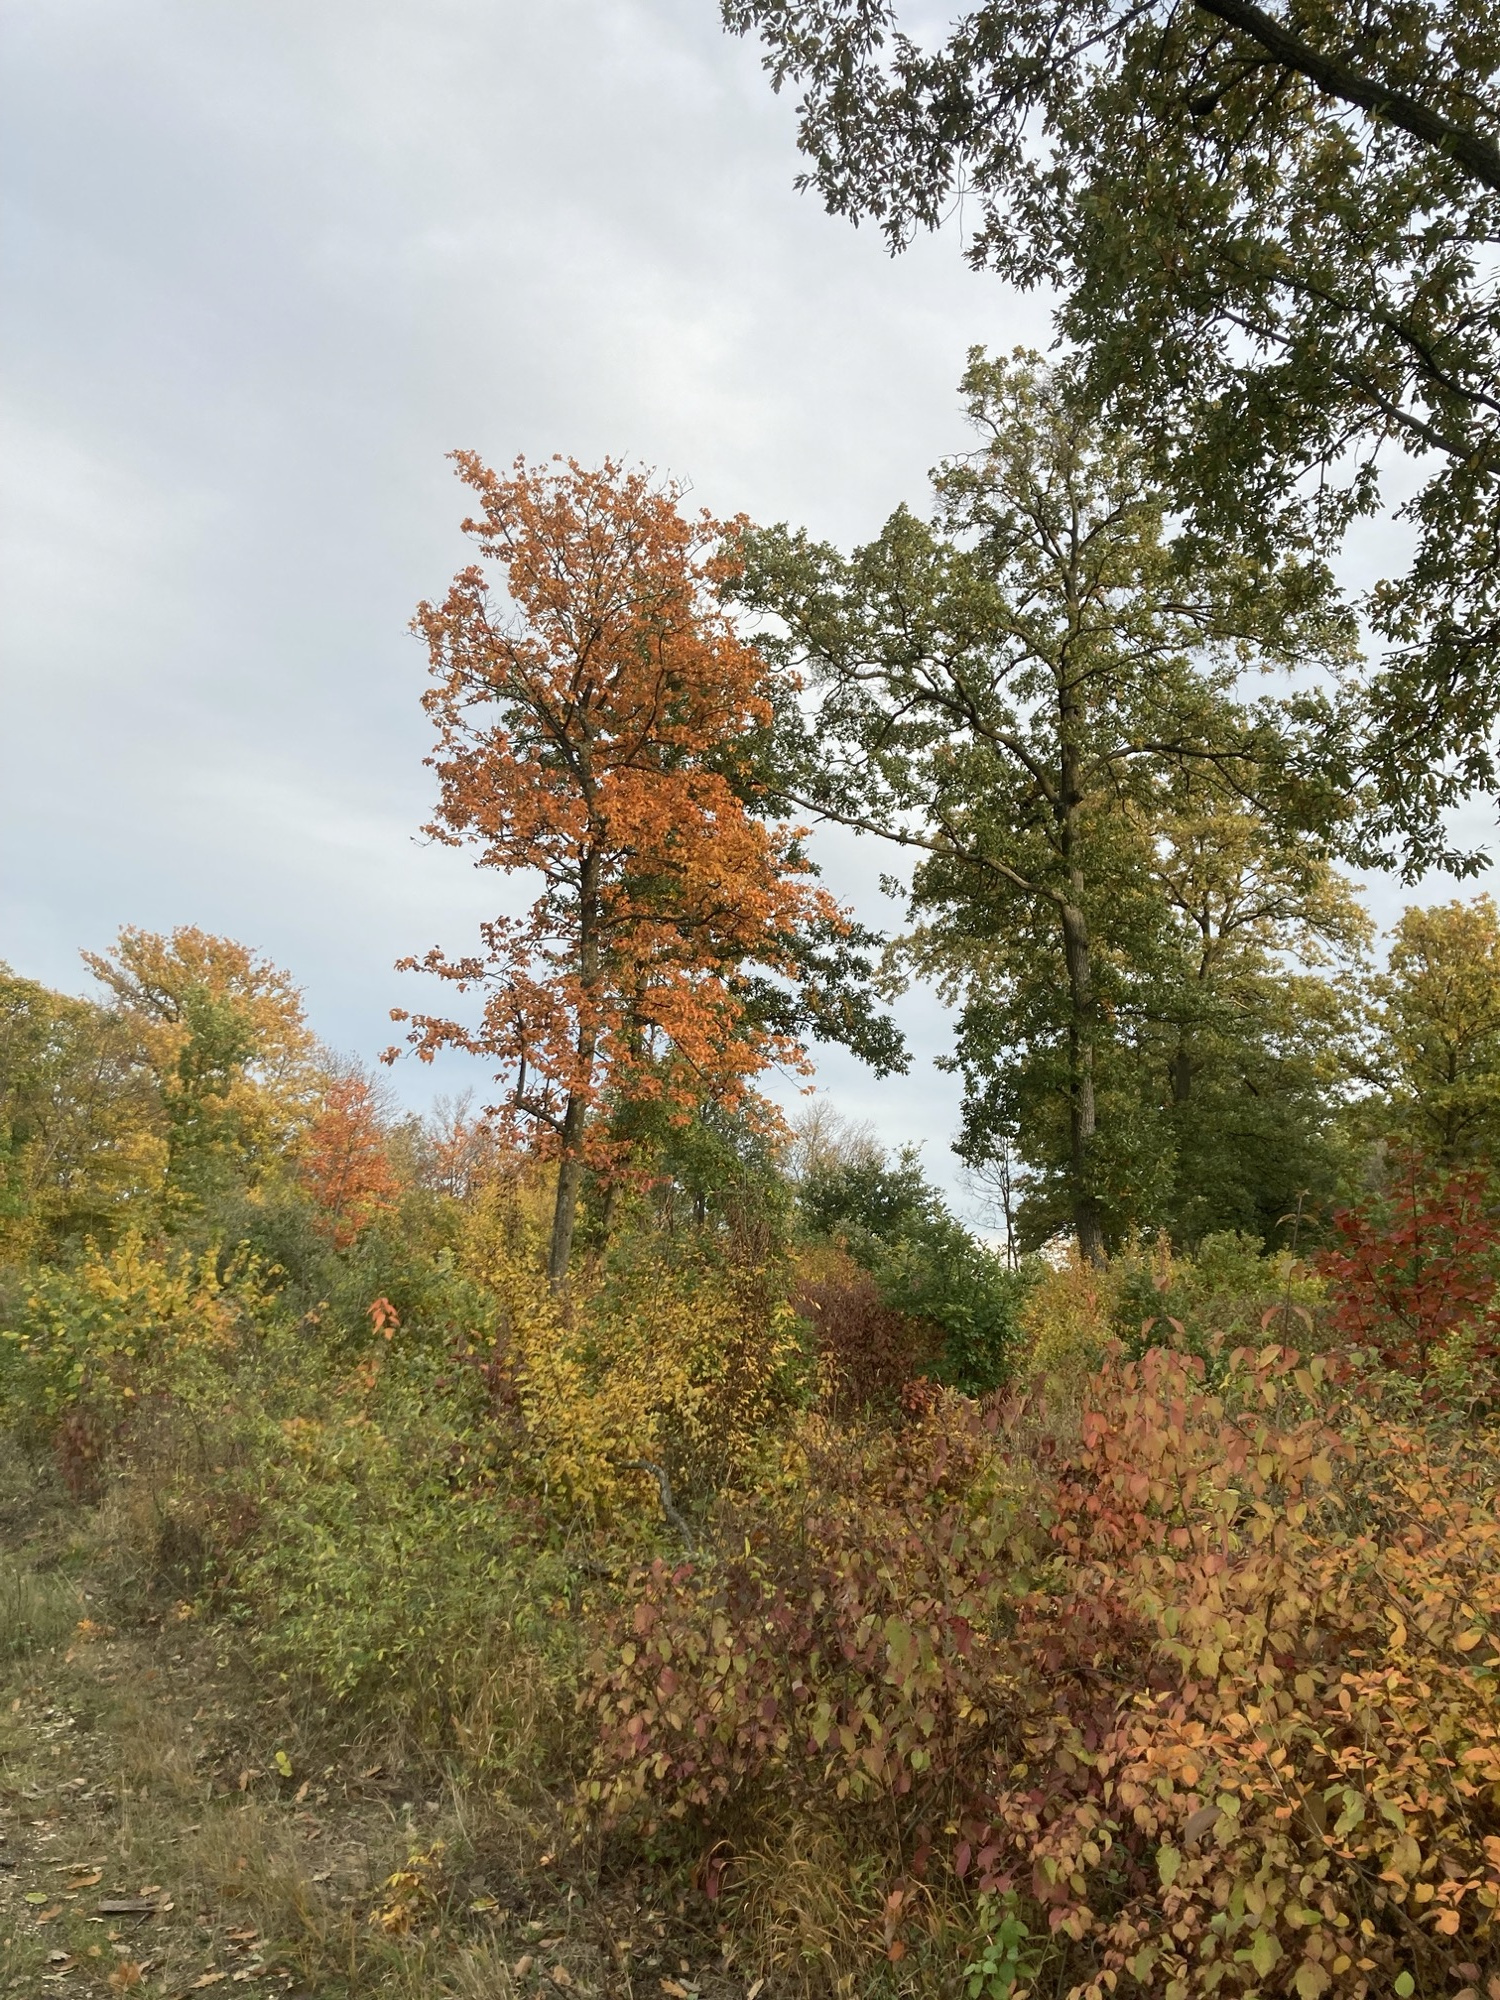 Bäume und Sträucher in verschiedensten Herbstfarben, besonders präsent ein Baum zentral im Bild mit leuchtend orangefarbenen Blättern